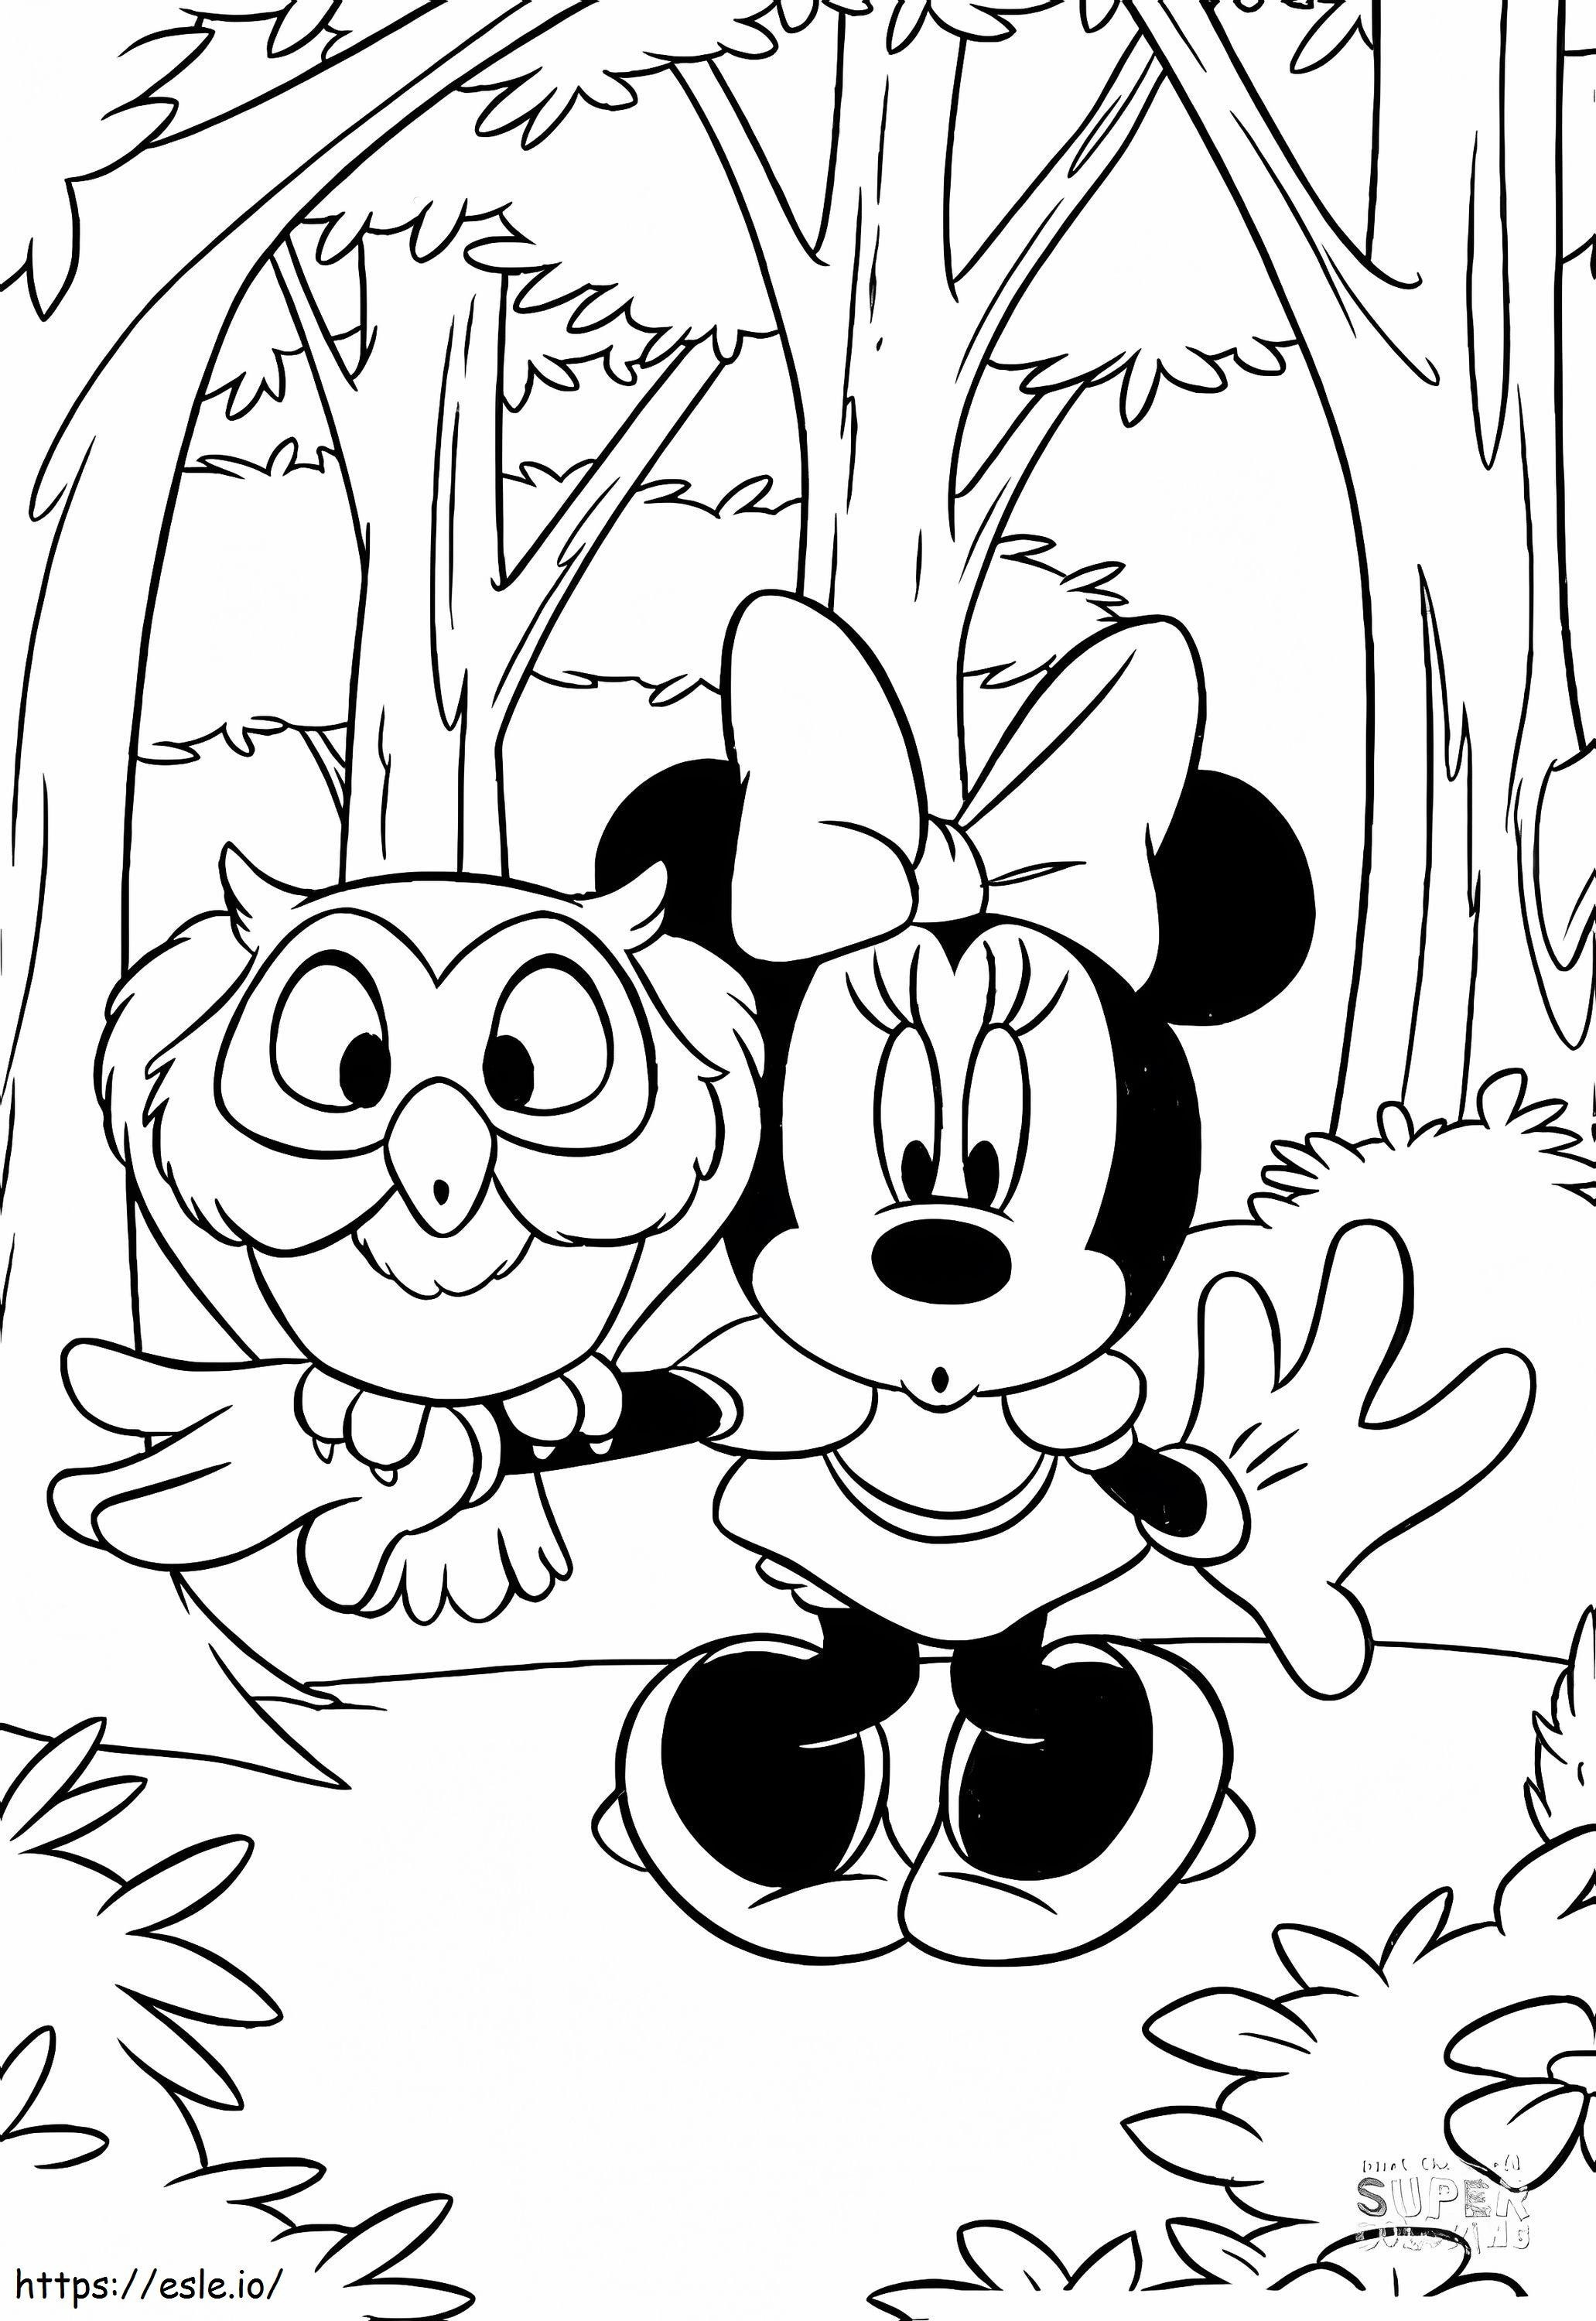 Buho ile Minnie Mouse boyama